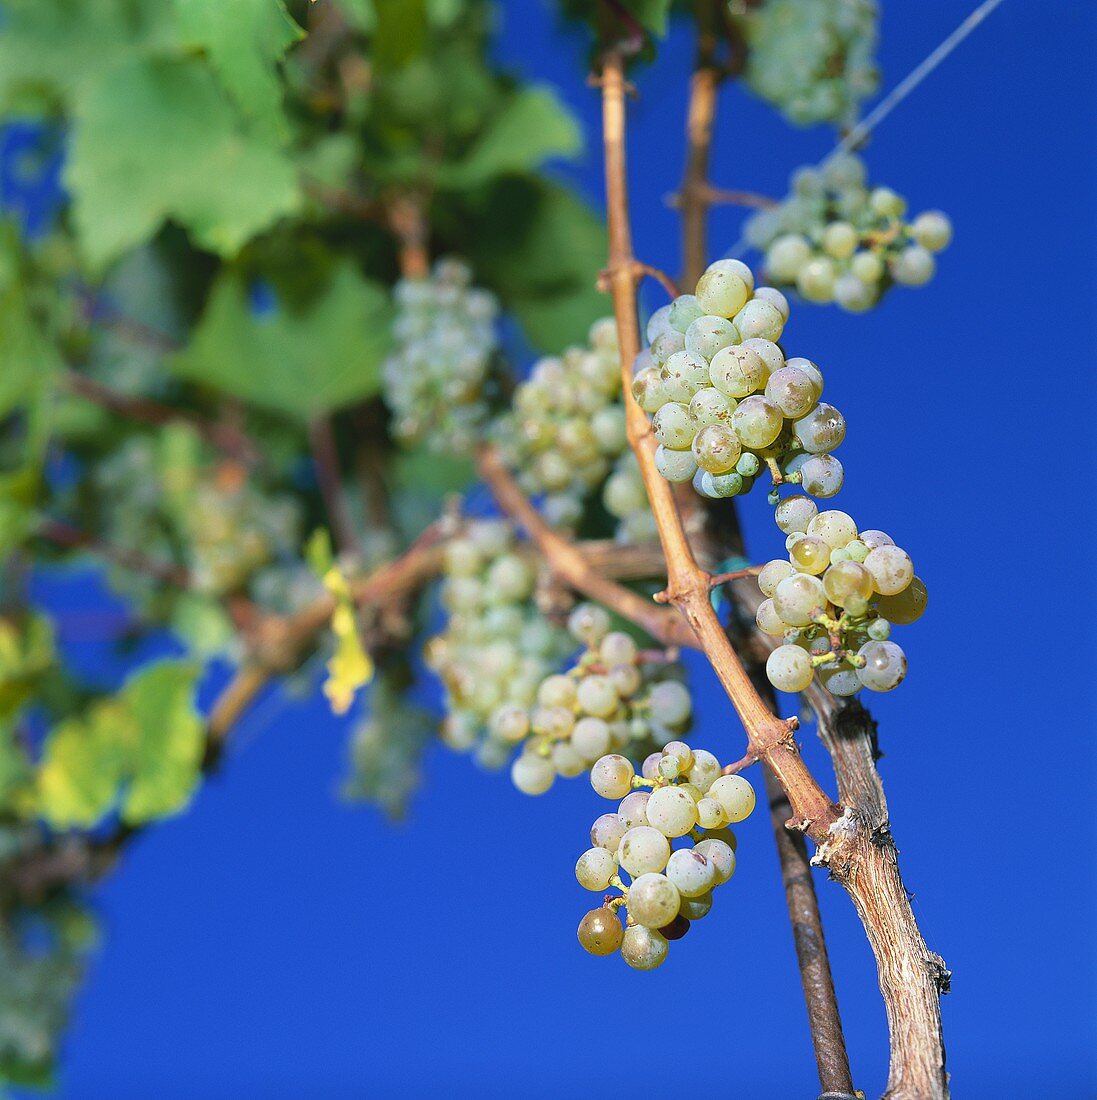 Riesling grapes in vineyard, Meran, S. Tyrol